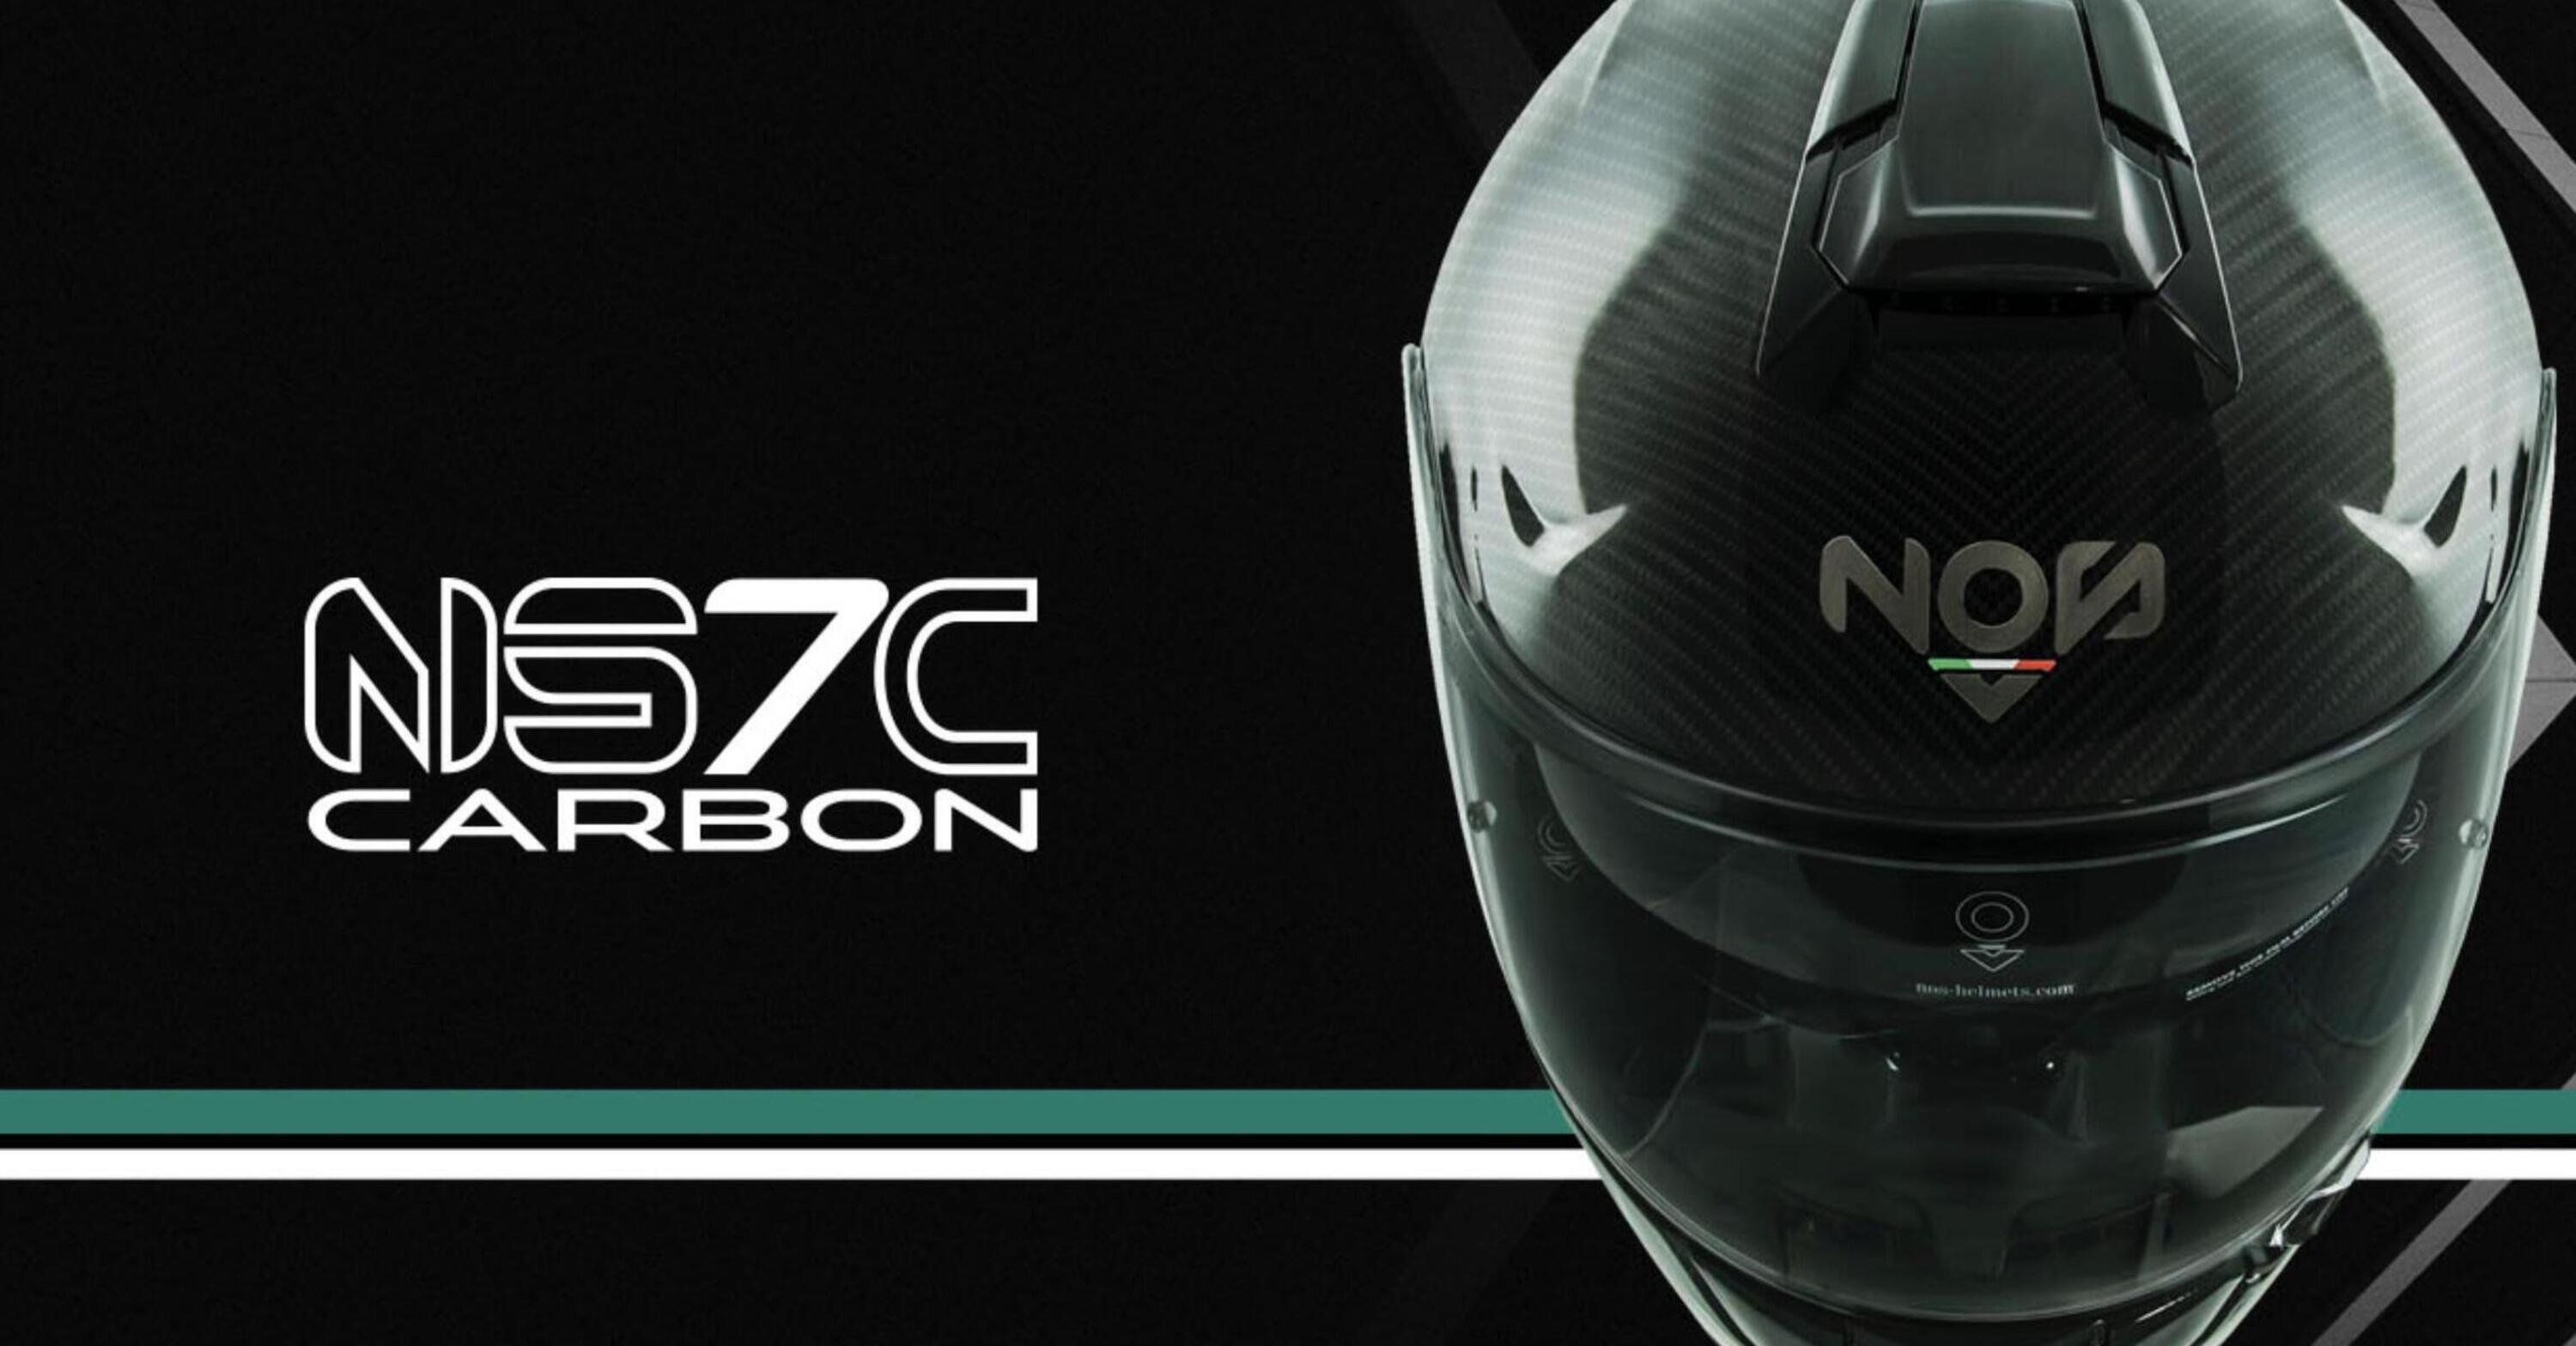 NOS Helmets, vinci un NS-7C Carbon